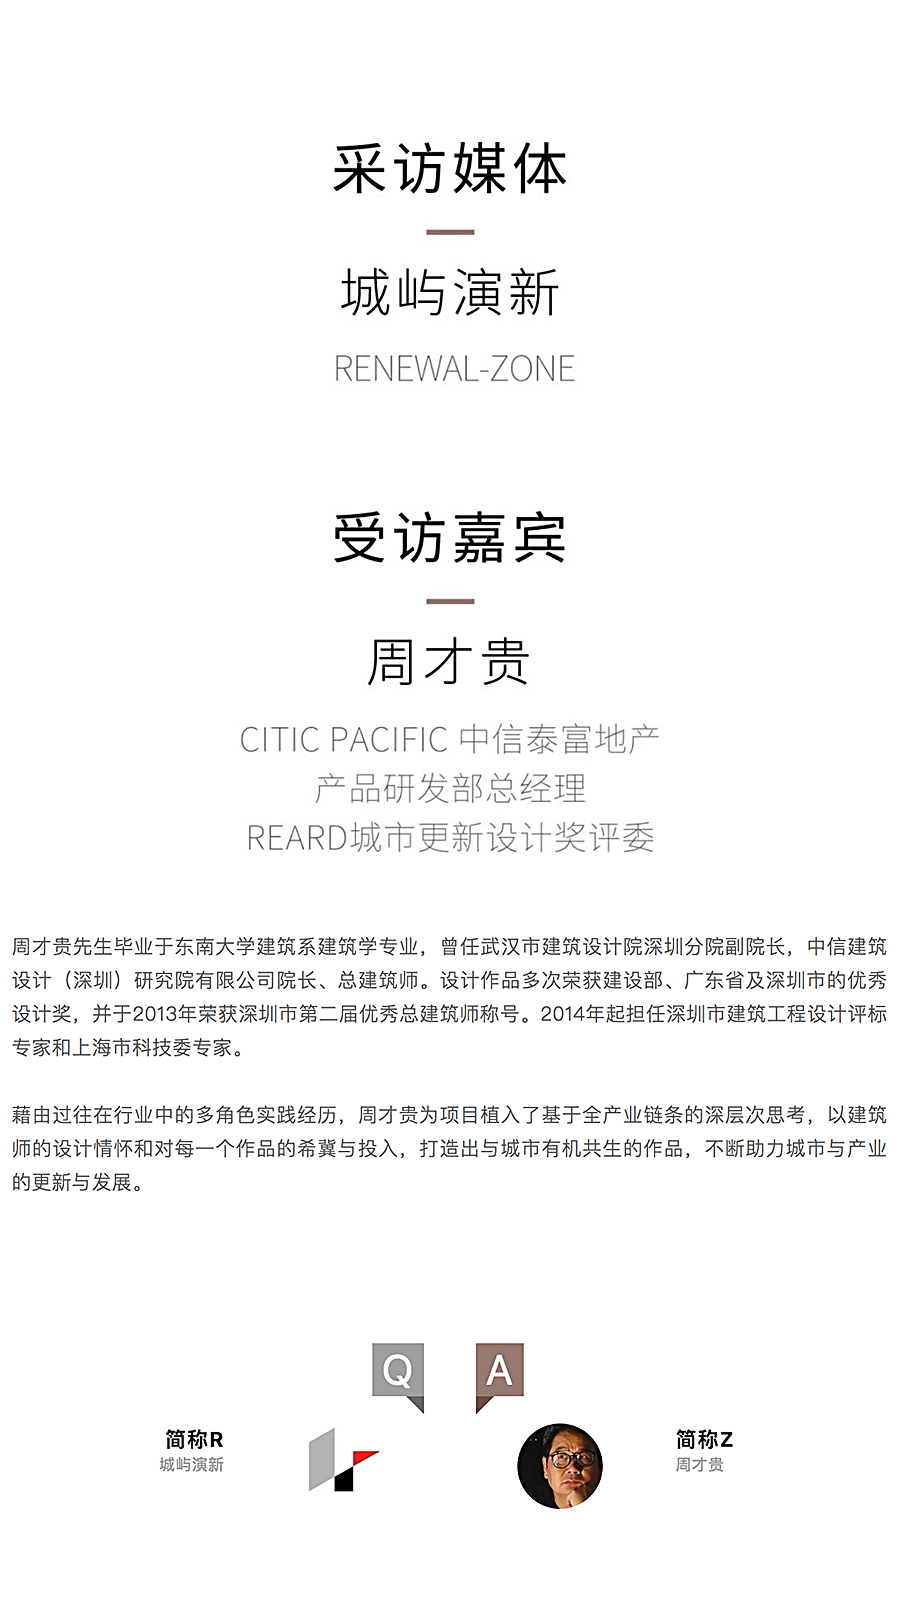 Renewal-Zone：中信泰富地产-周才贵-_-以跨越式多元视角塑造作品的长久生命力_0002_图层-3.jpg